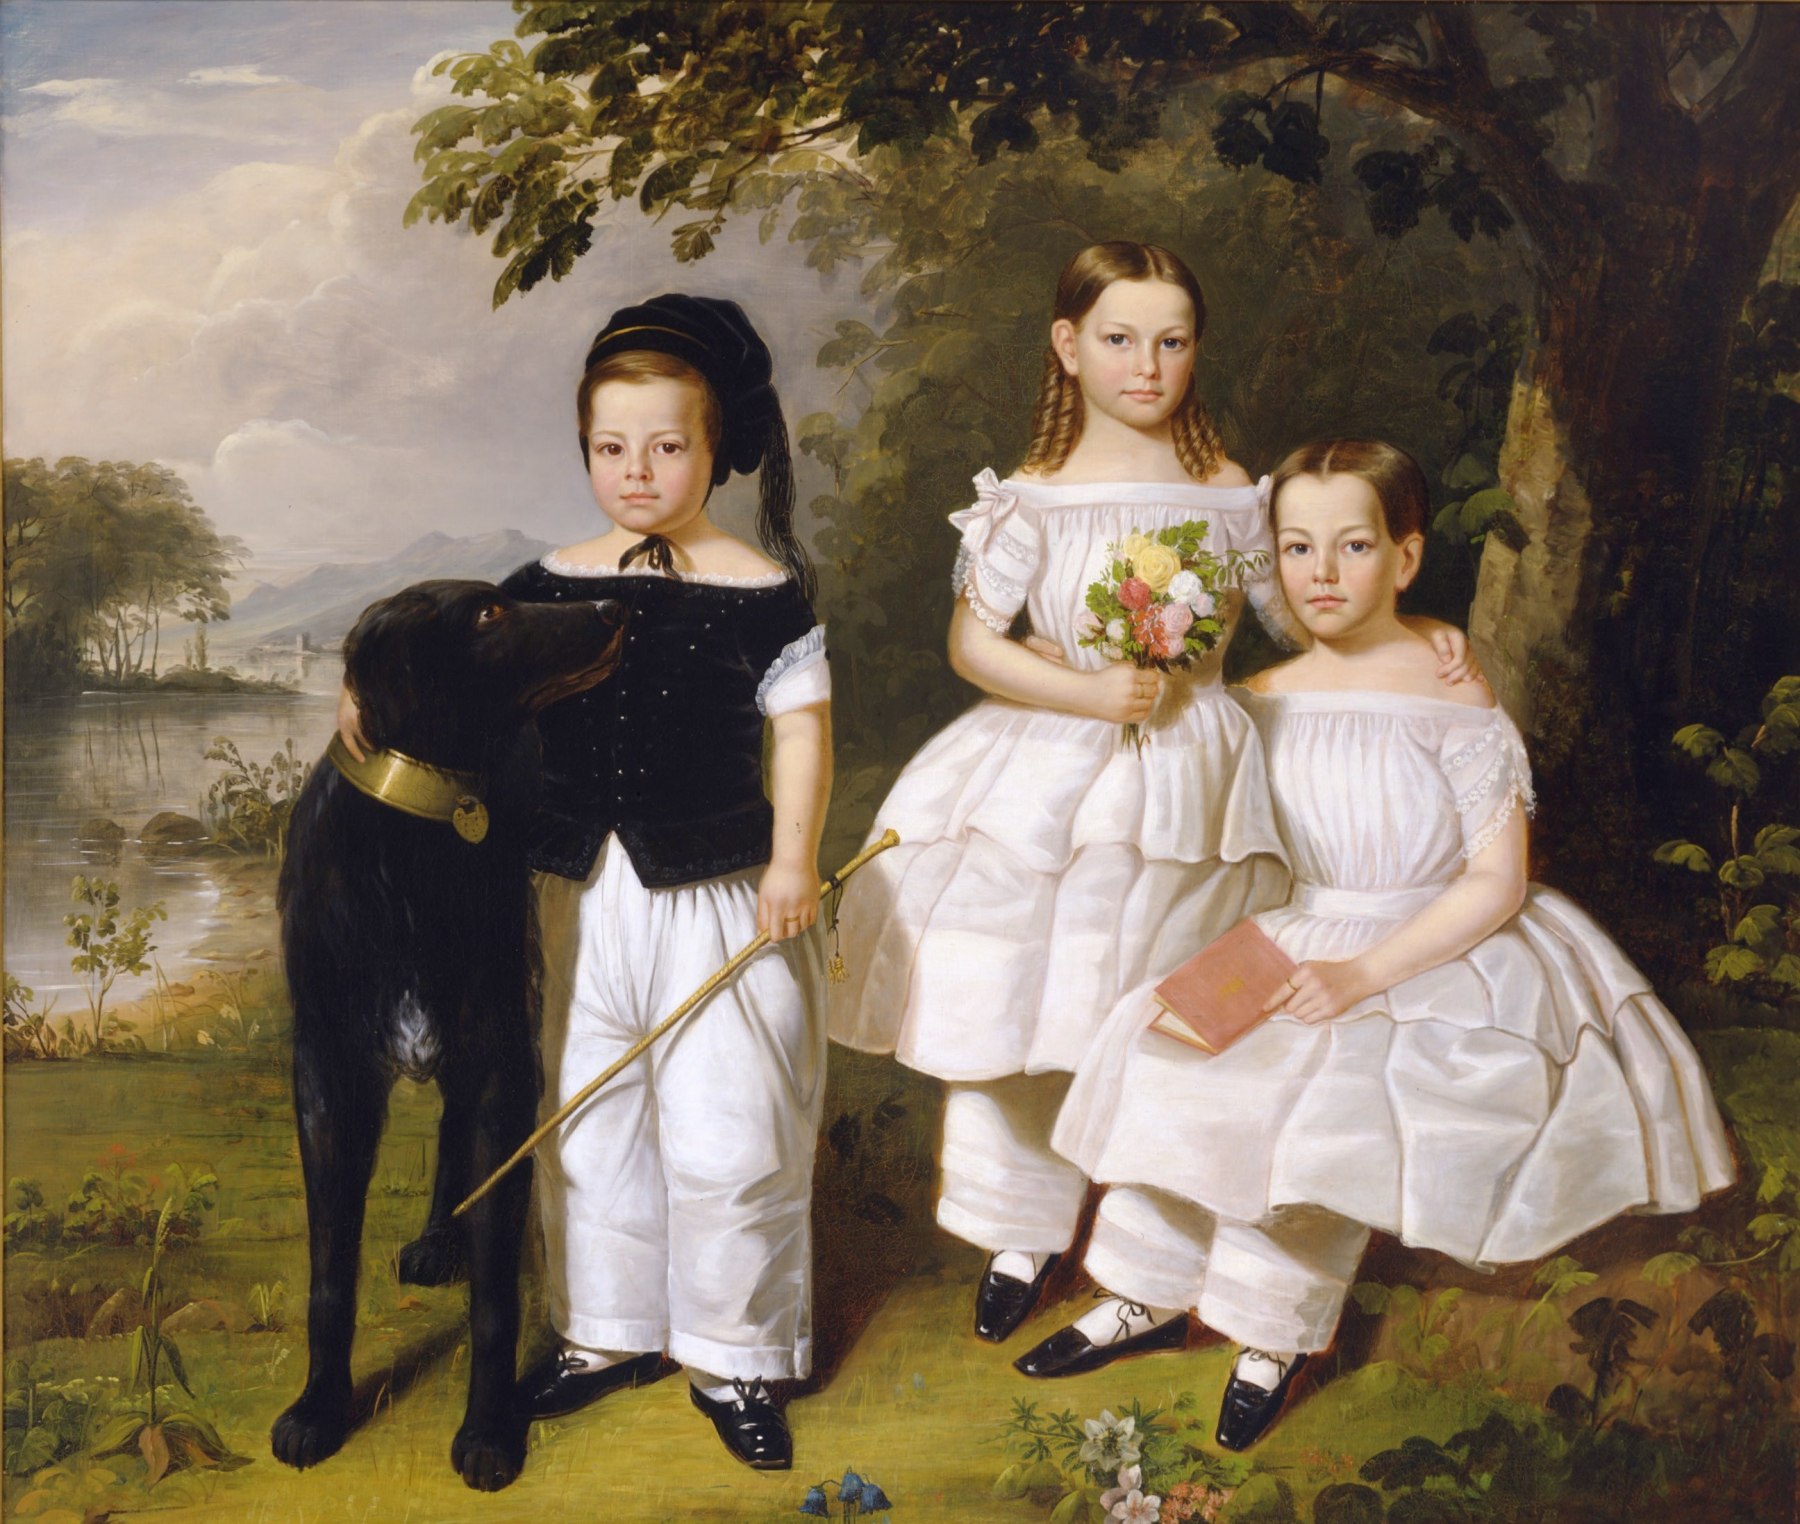 William R. Hamilton (1795-1879), The Three Odell Children, Newburgh, New York, about 1846-52